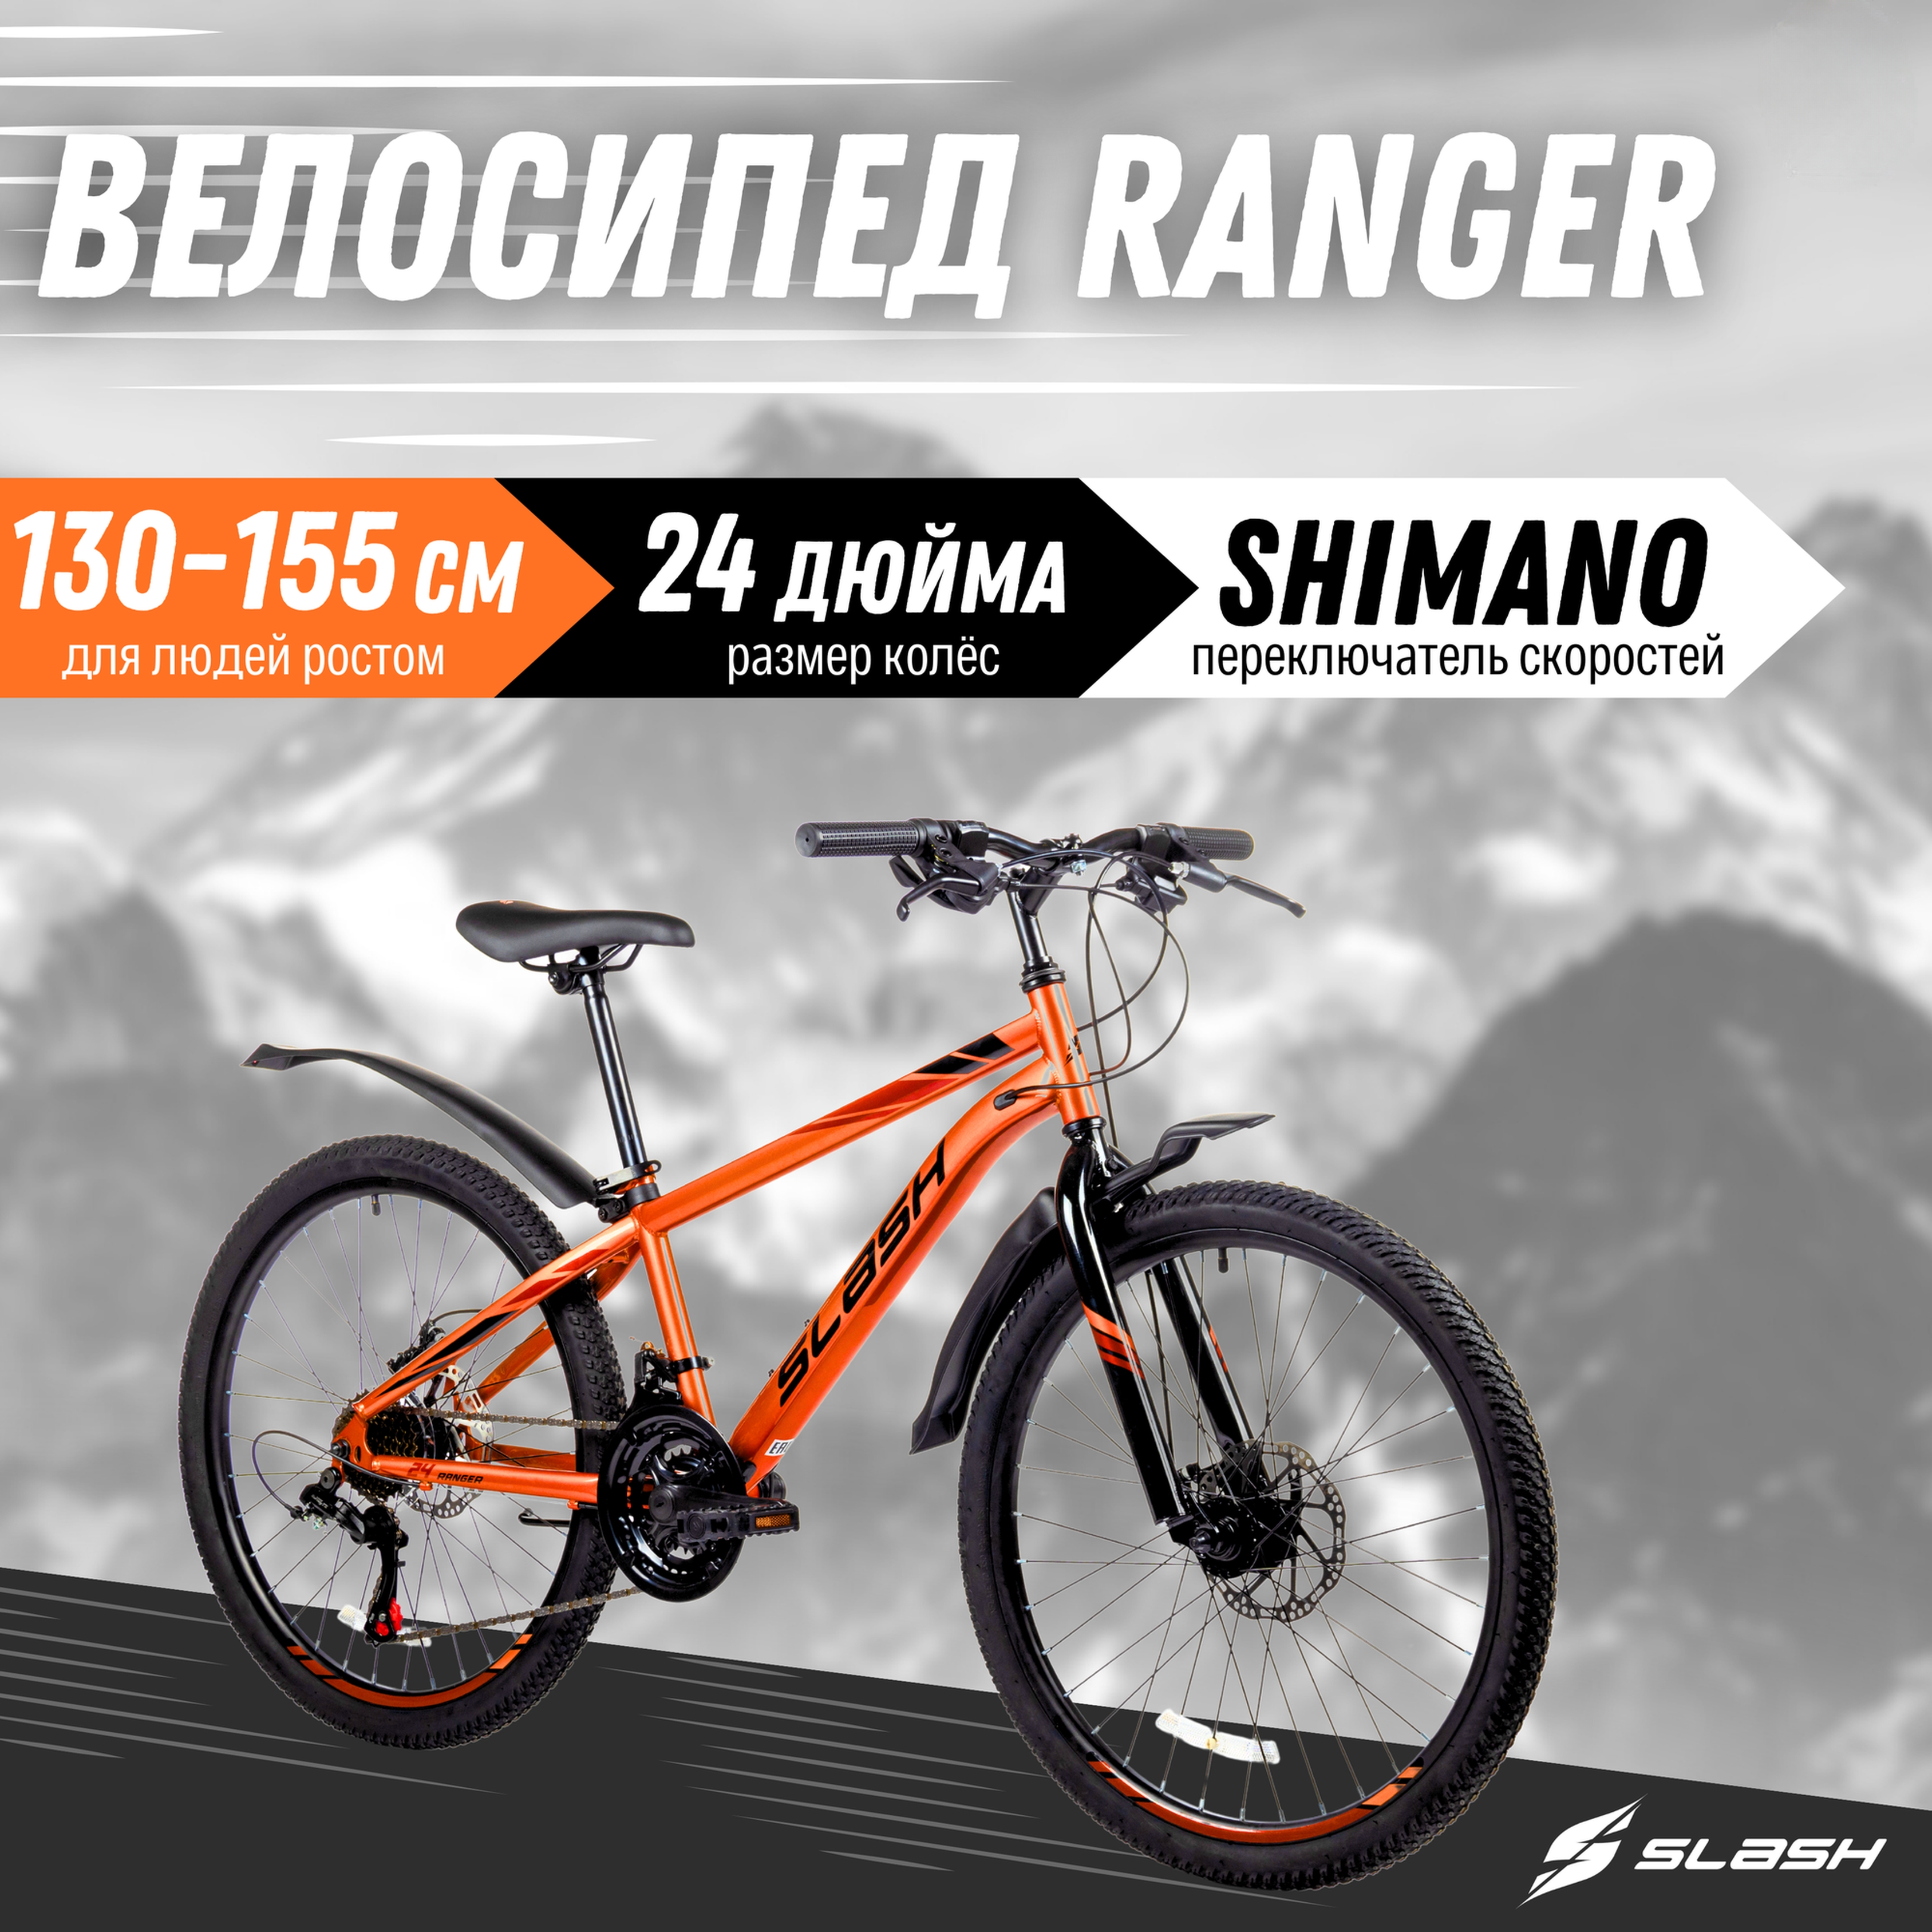 Горный велосипед Slash Ranger оранжевый, колеса 24, скорость 21, рост 130-155 см